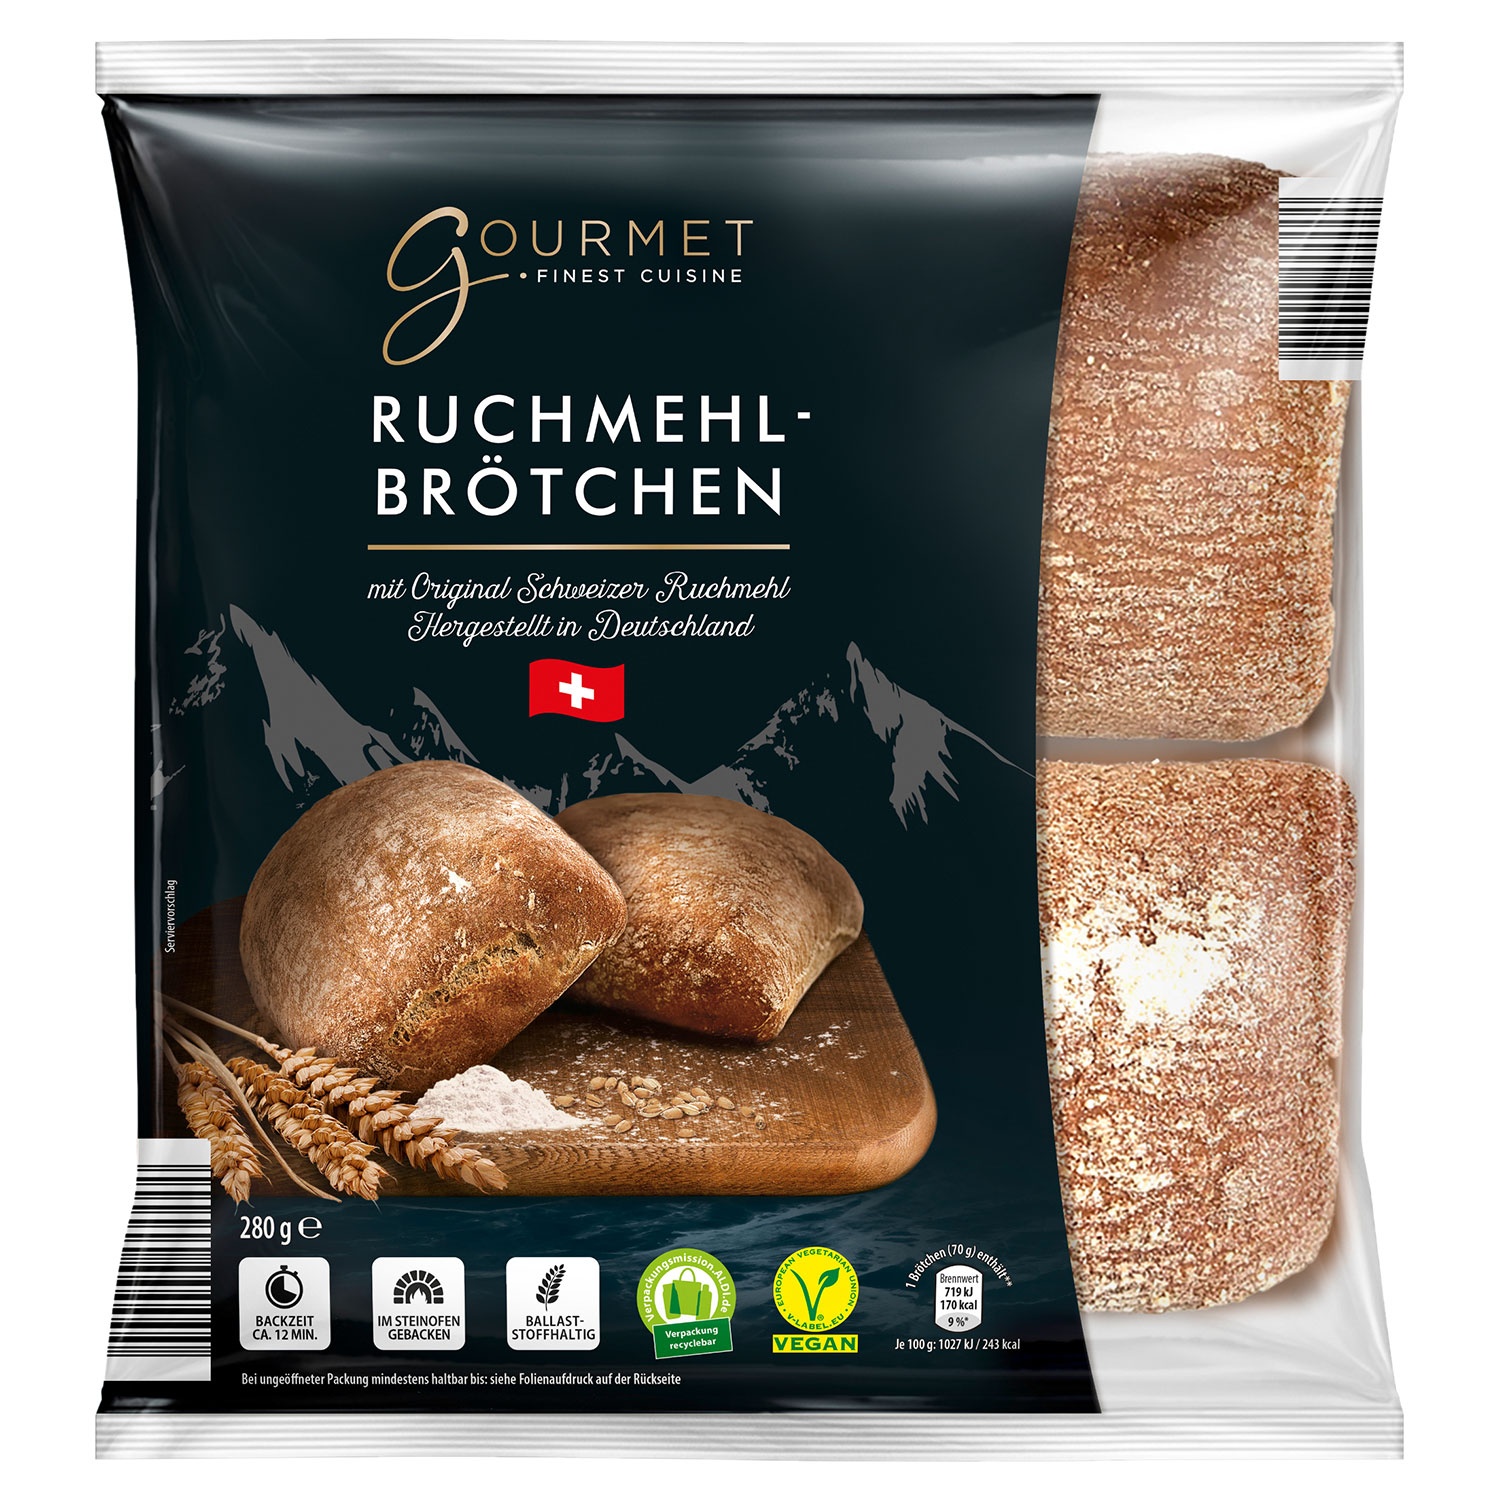 GOURMET FINEST CUISINE Ruchmehl-Brötchen 280 g